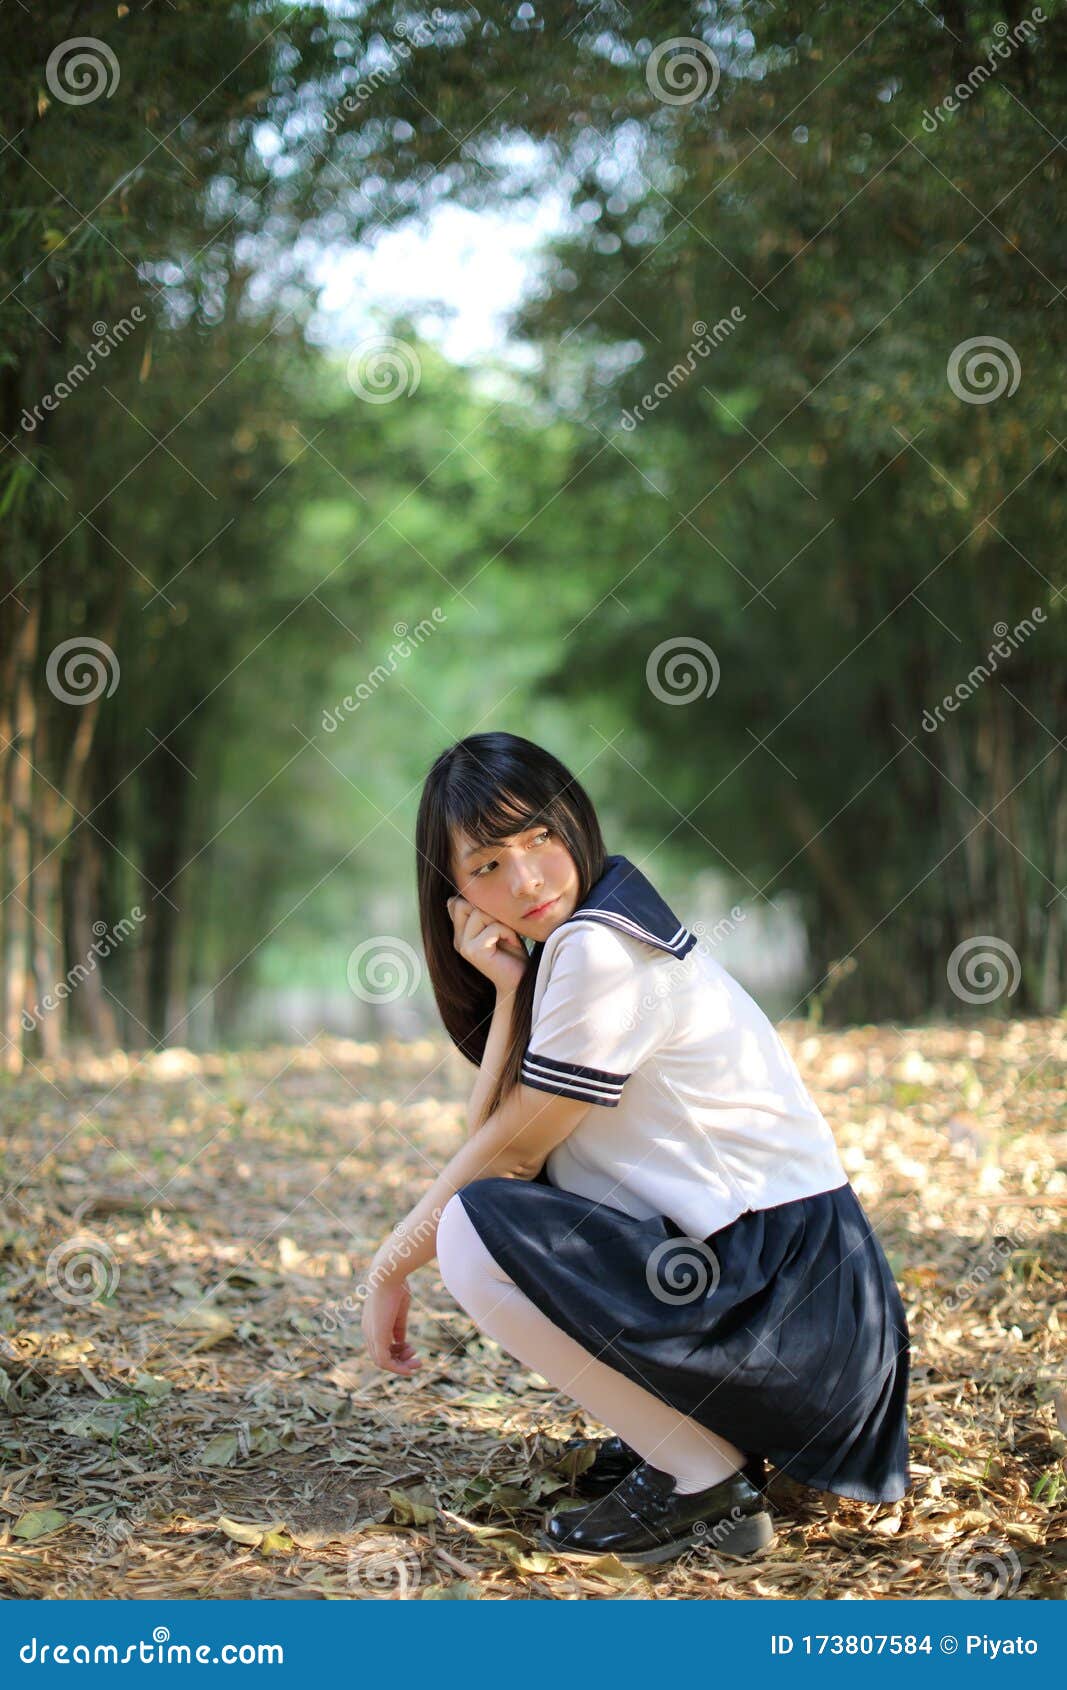 竹林背景中美丽的亚洲日本高中女生制服画像 库存照片. 图片 包括有 室外, 教育, 生活方式, 一个, 日语 - 178514762